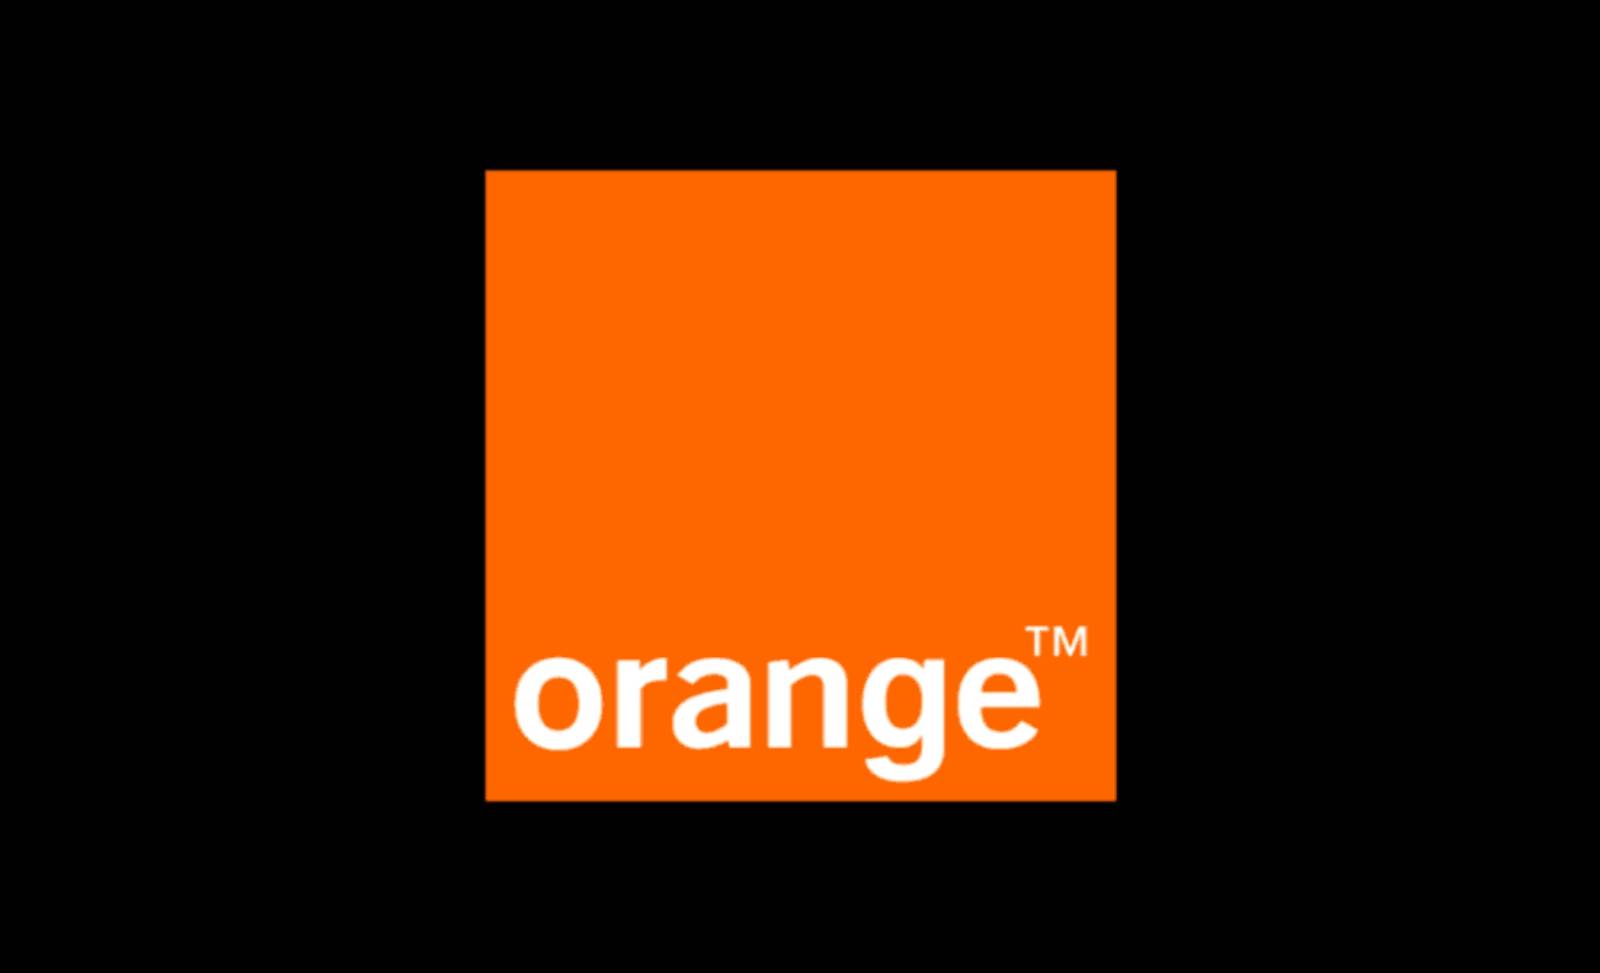 ps4 arancione